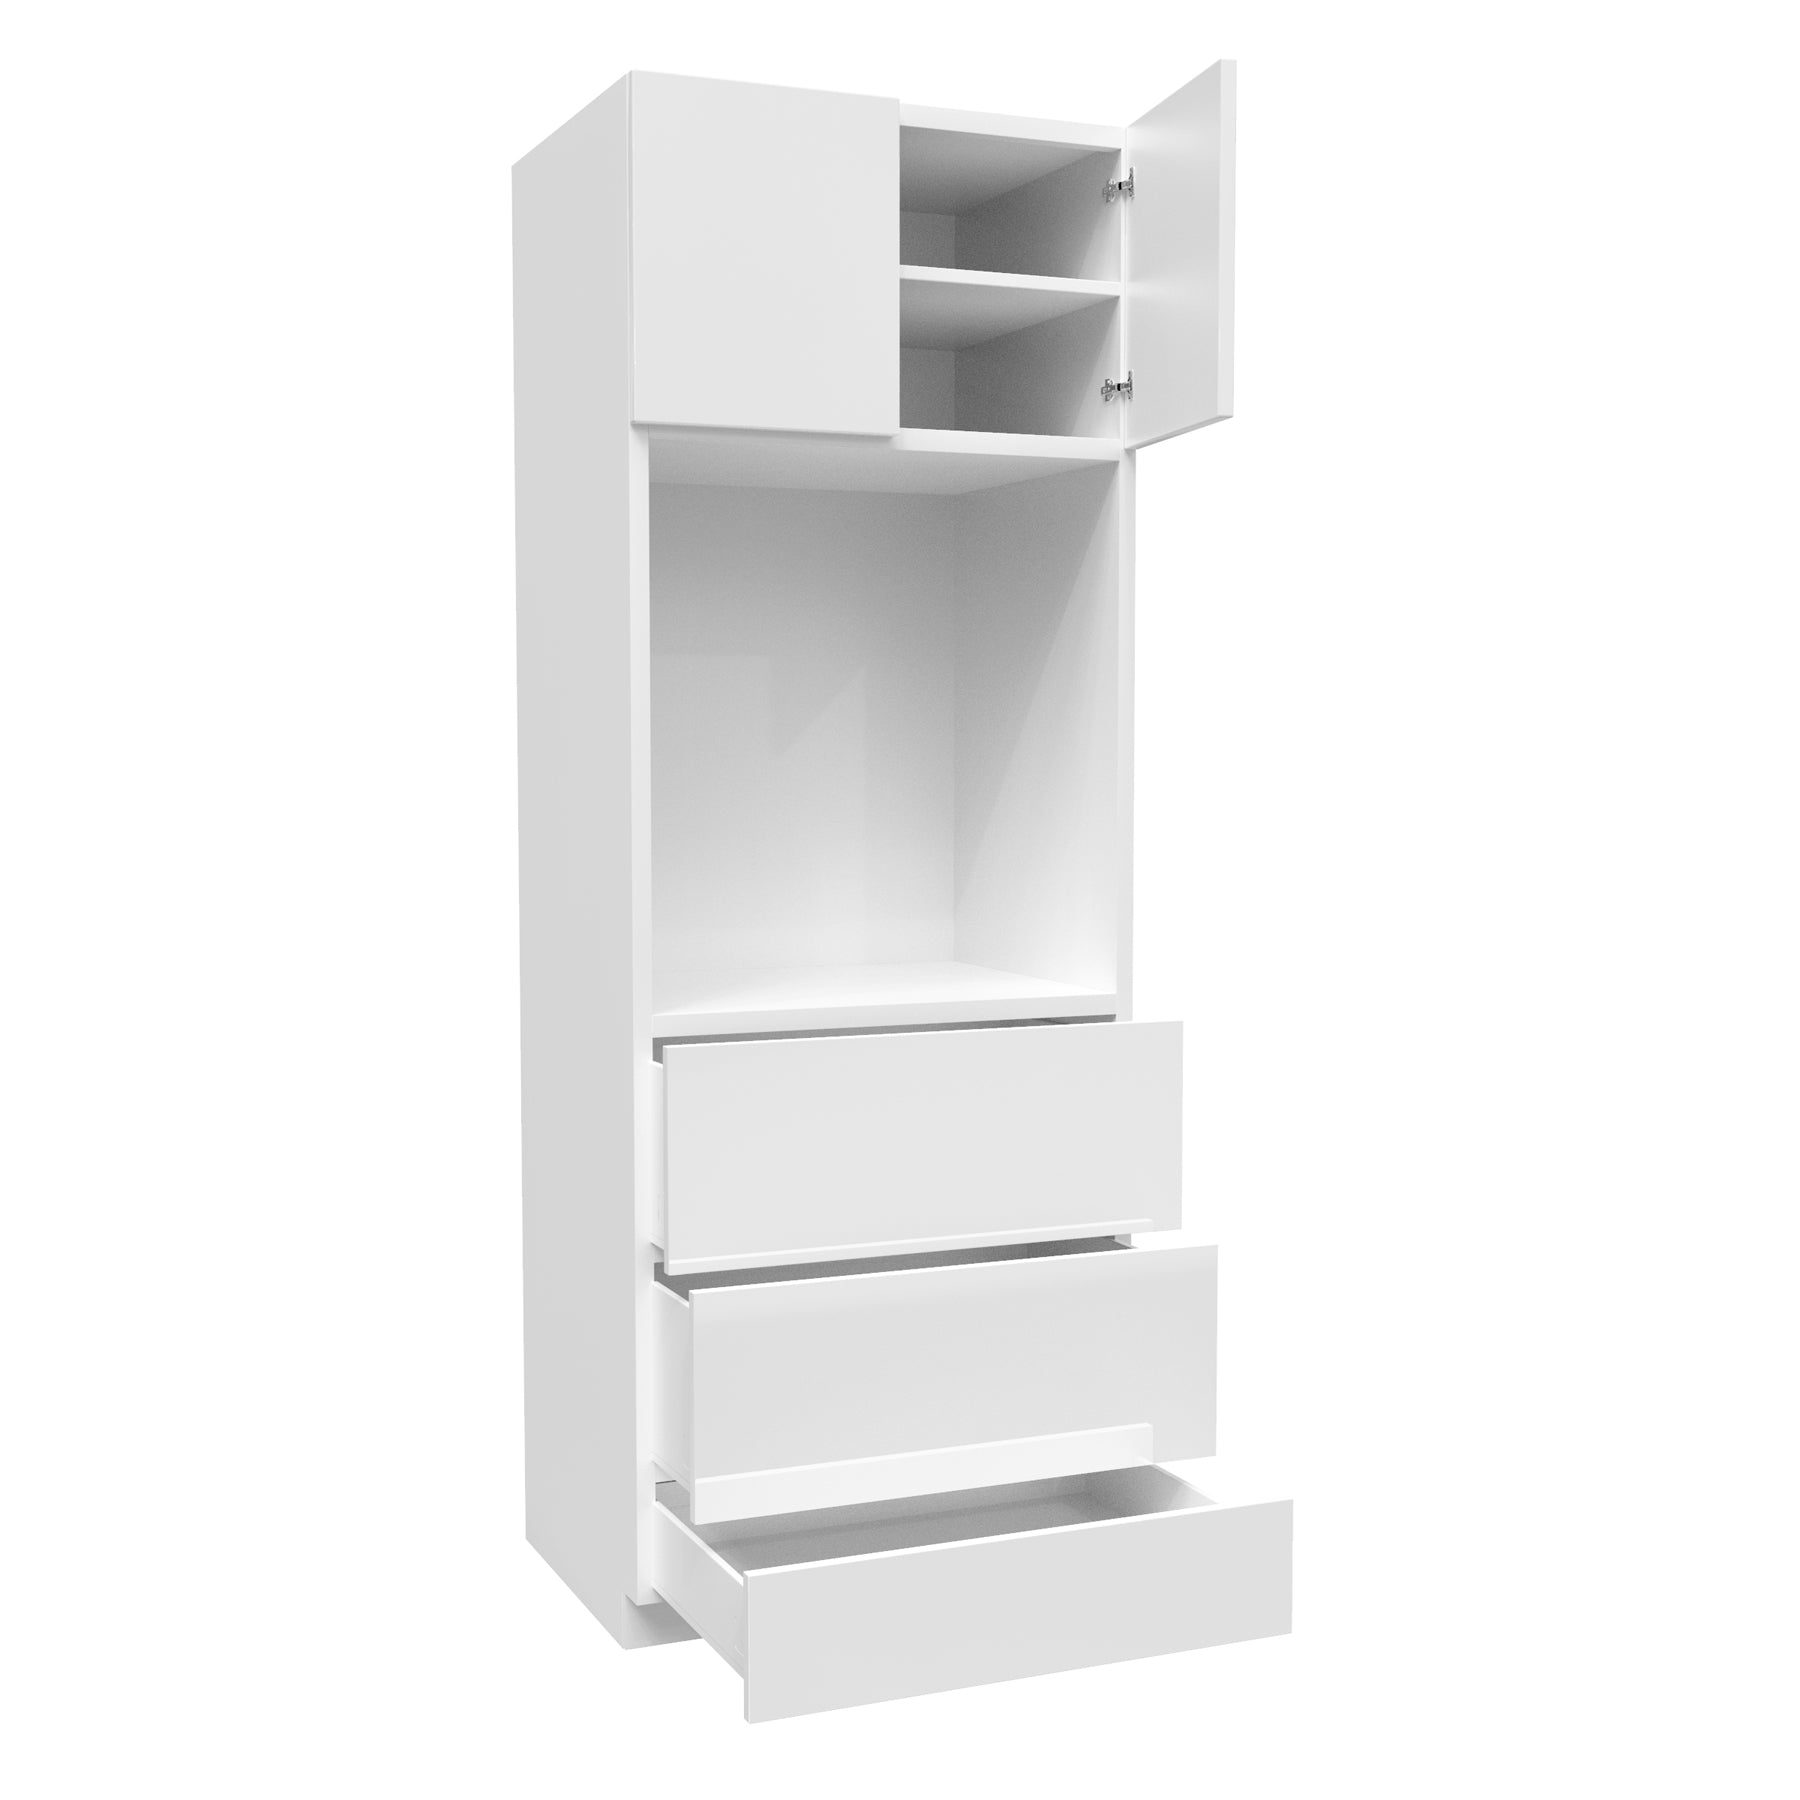 Single Oven Cabinet | Milano White | 30W x 84H x 24D